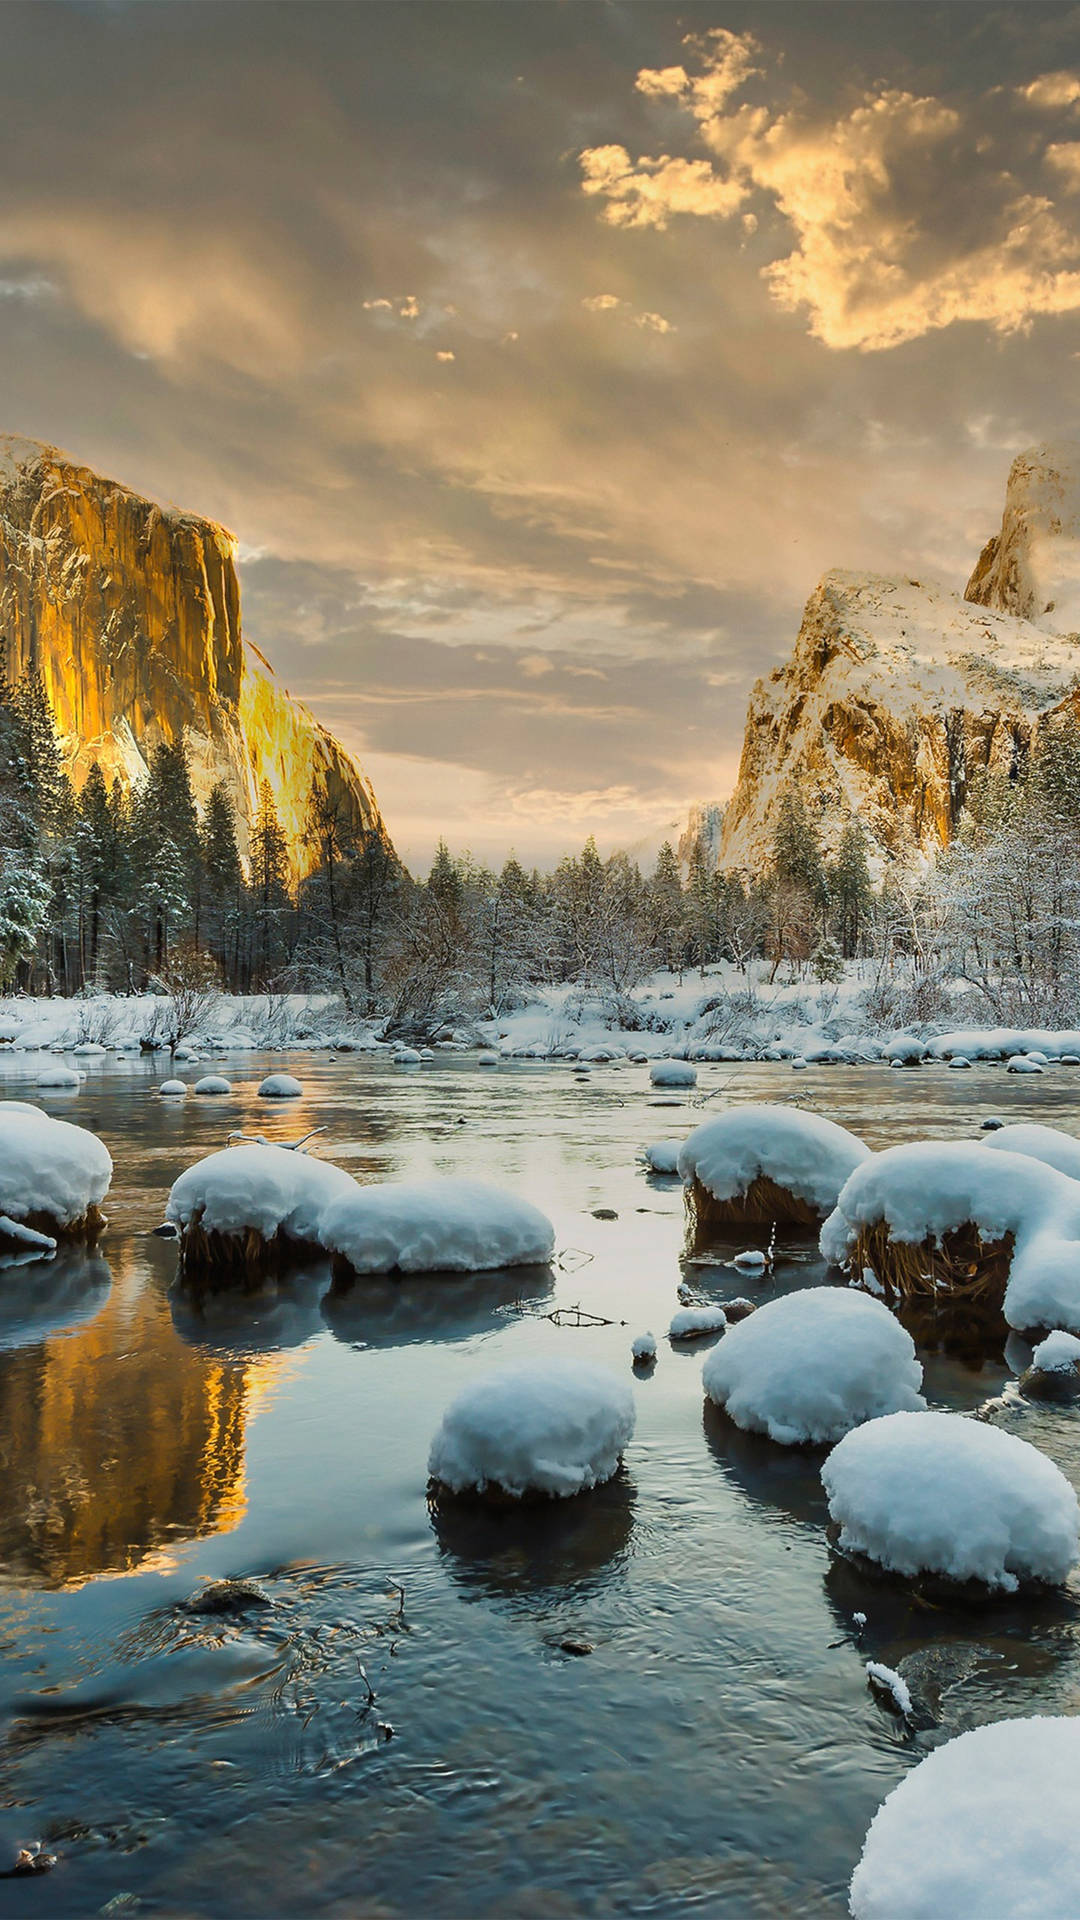 Rocascongeladas Por Yosemite En El Iphone. Fondo de pantalla